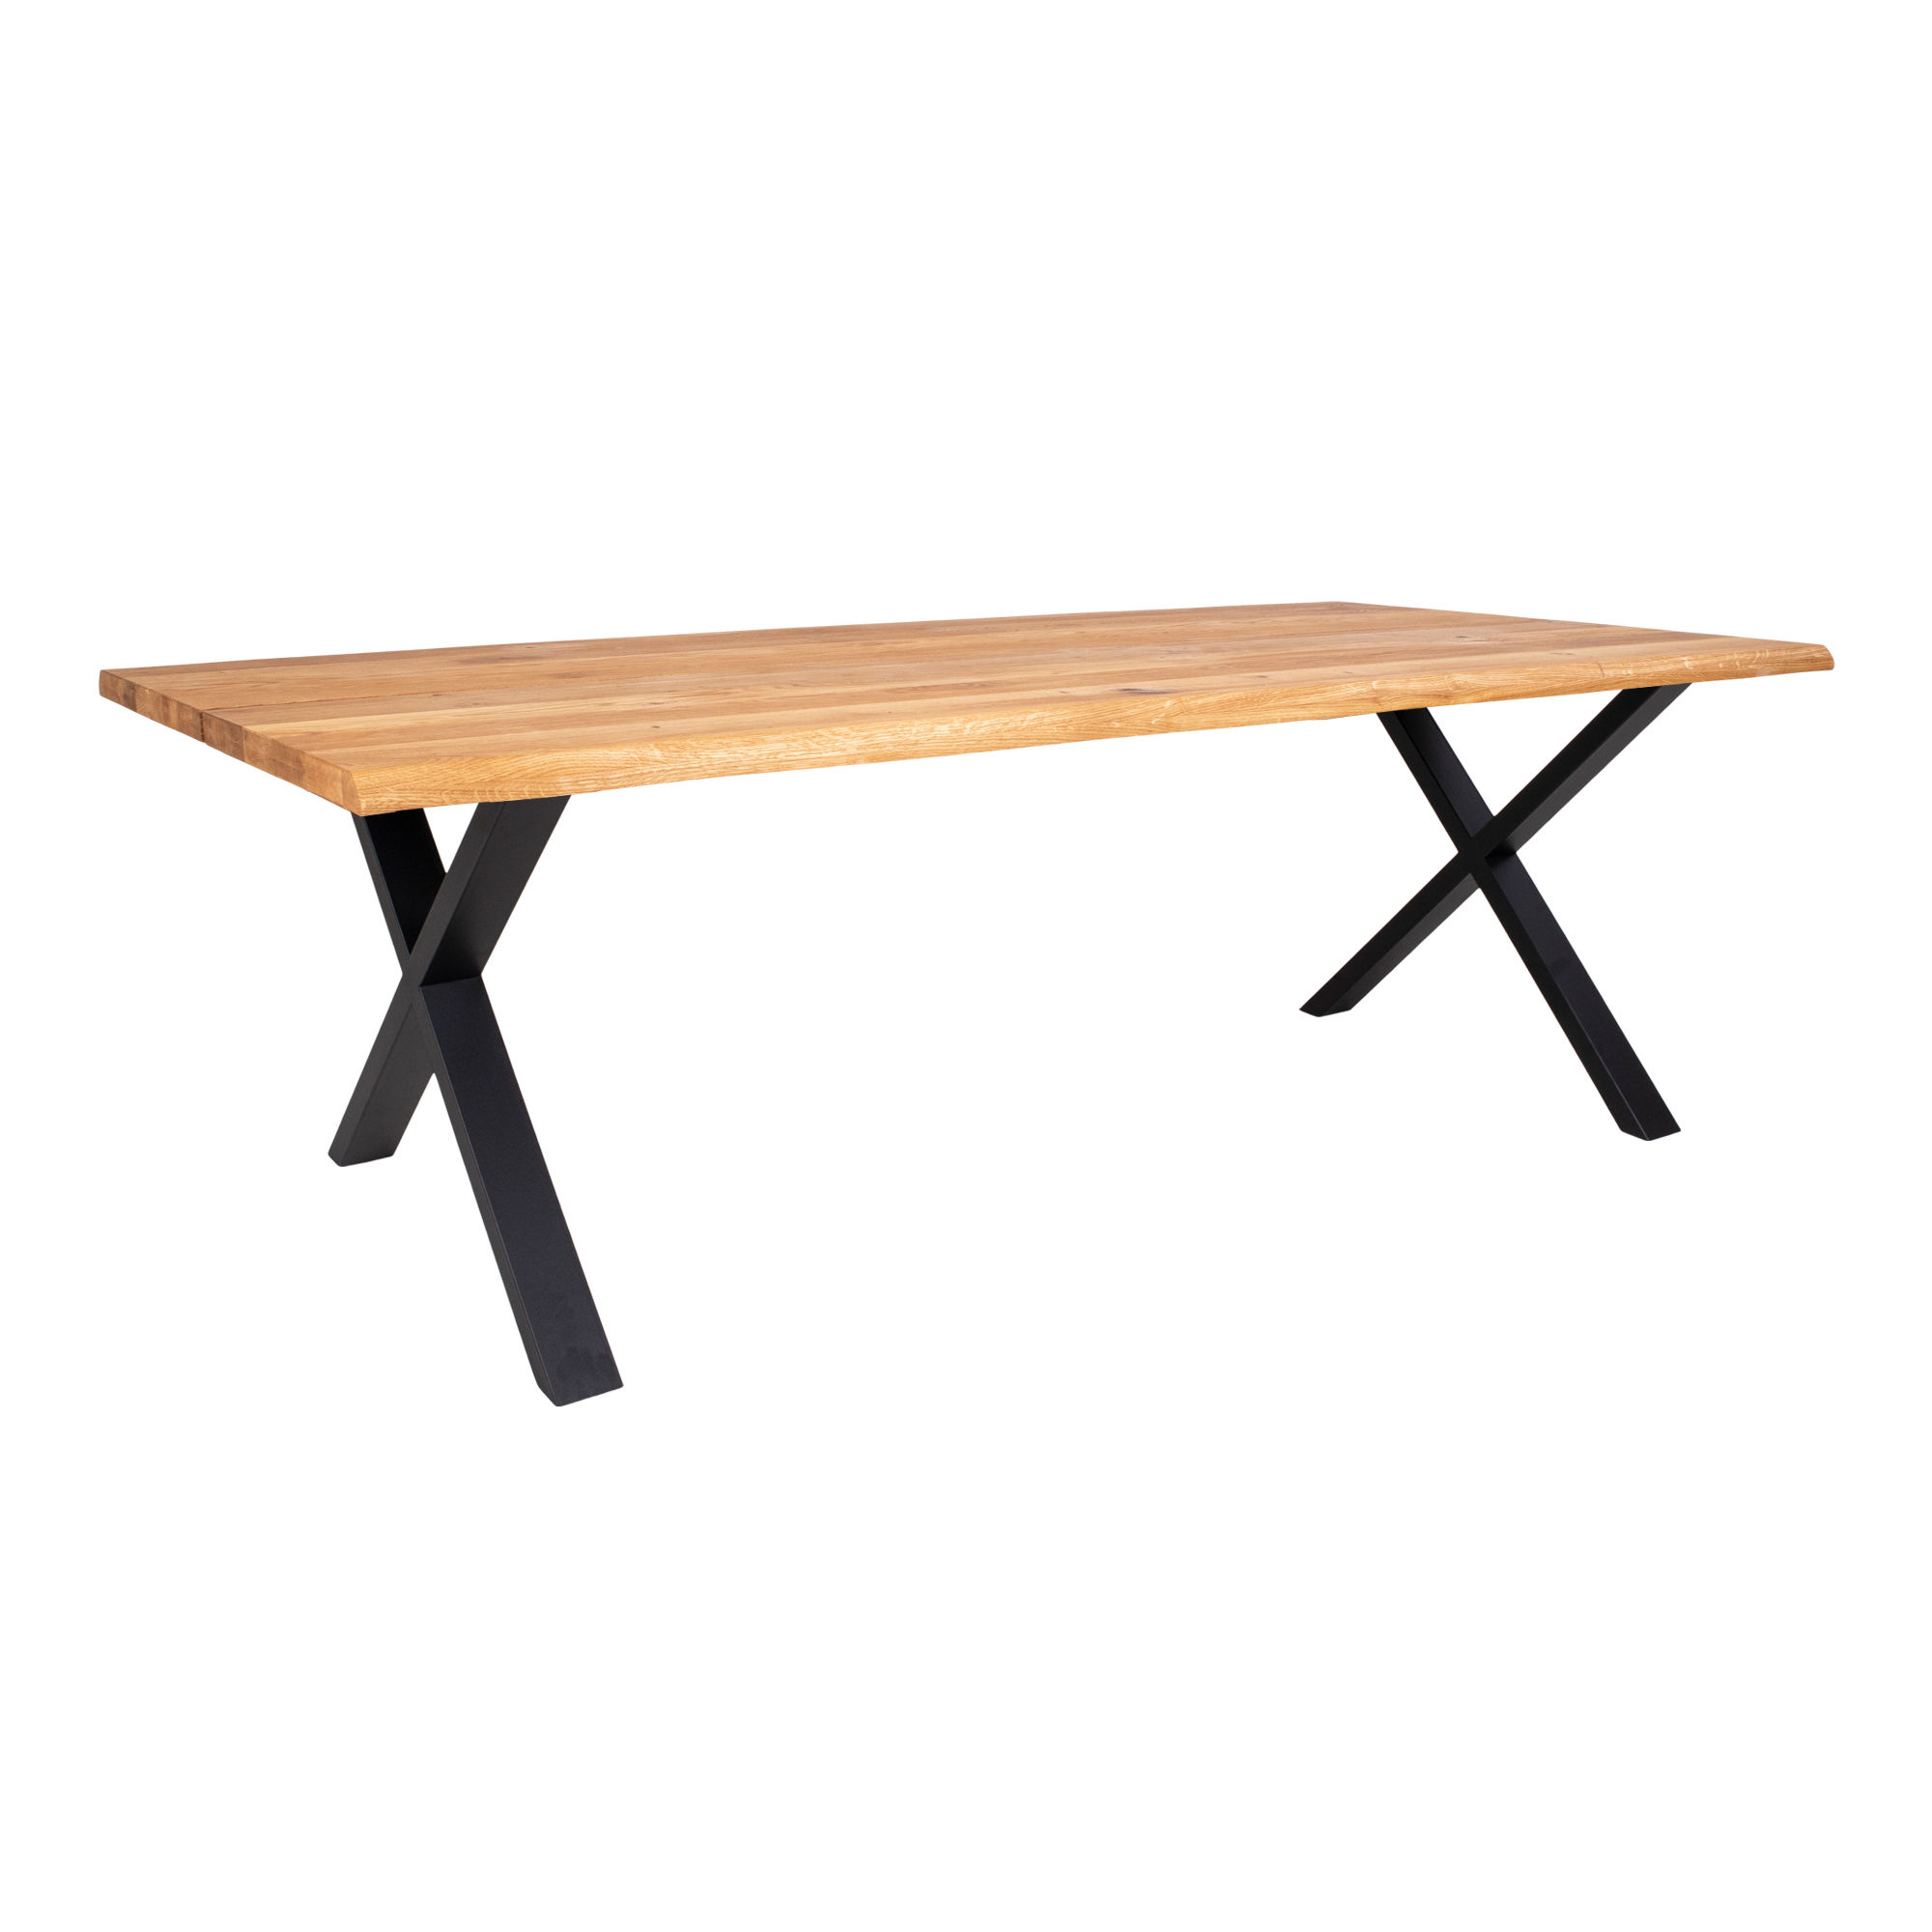 4: Juva - Spisebord i olieret  eg, 95 x 240 cm, med eller uden tillægsplader Med 2 tillægsplader